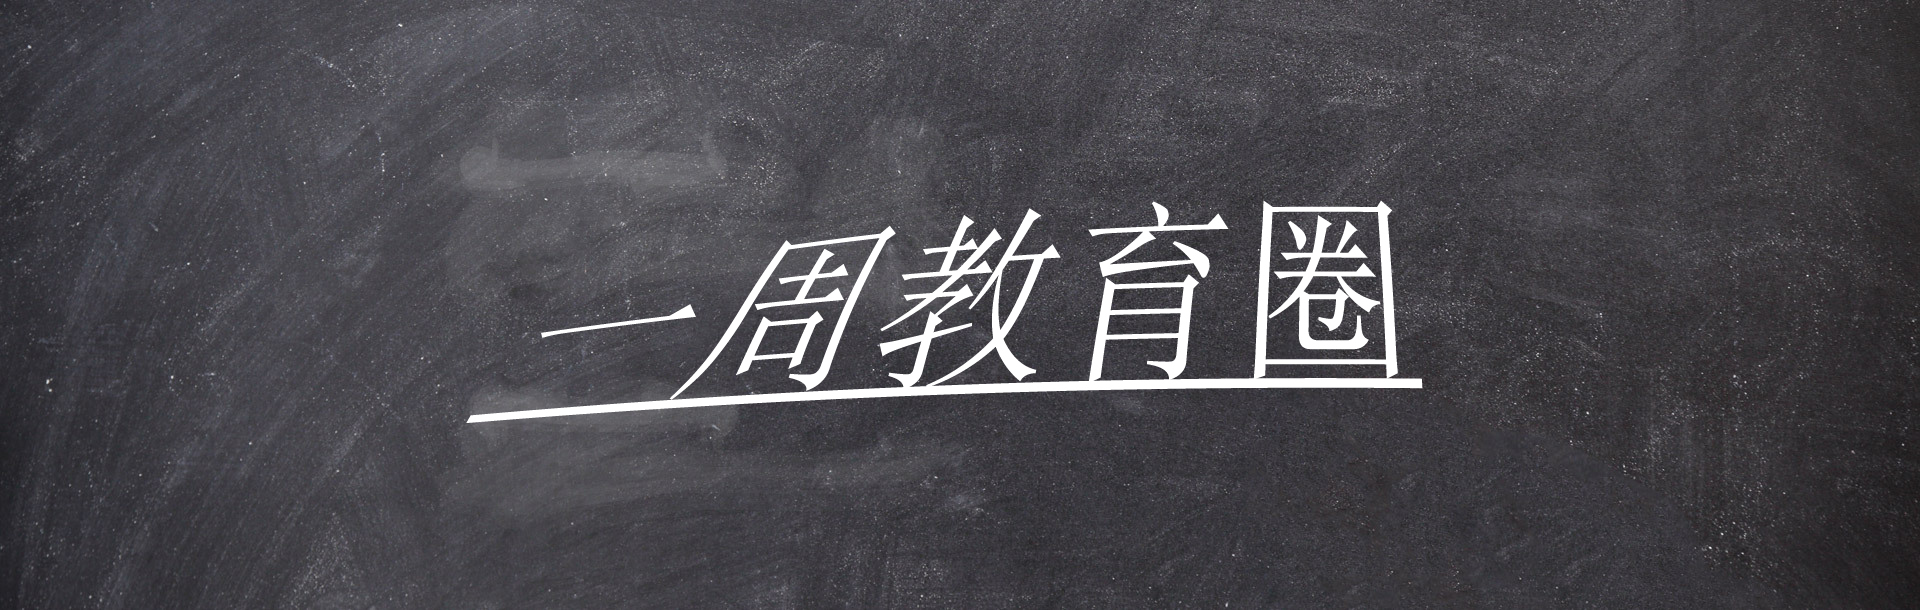 一周教育圈|香港教育局宣布全港停课，教育部强调减负不能搞一刀切